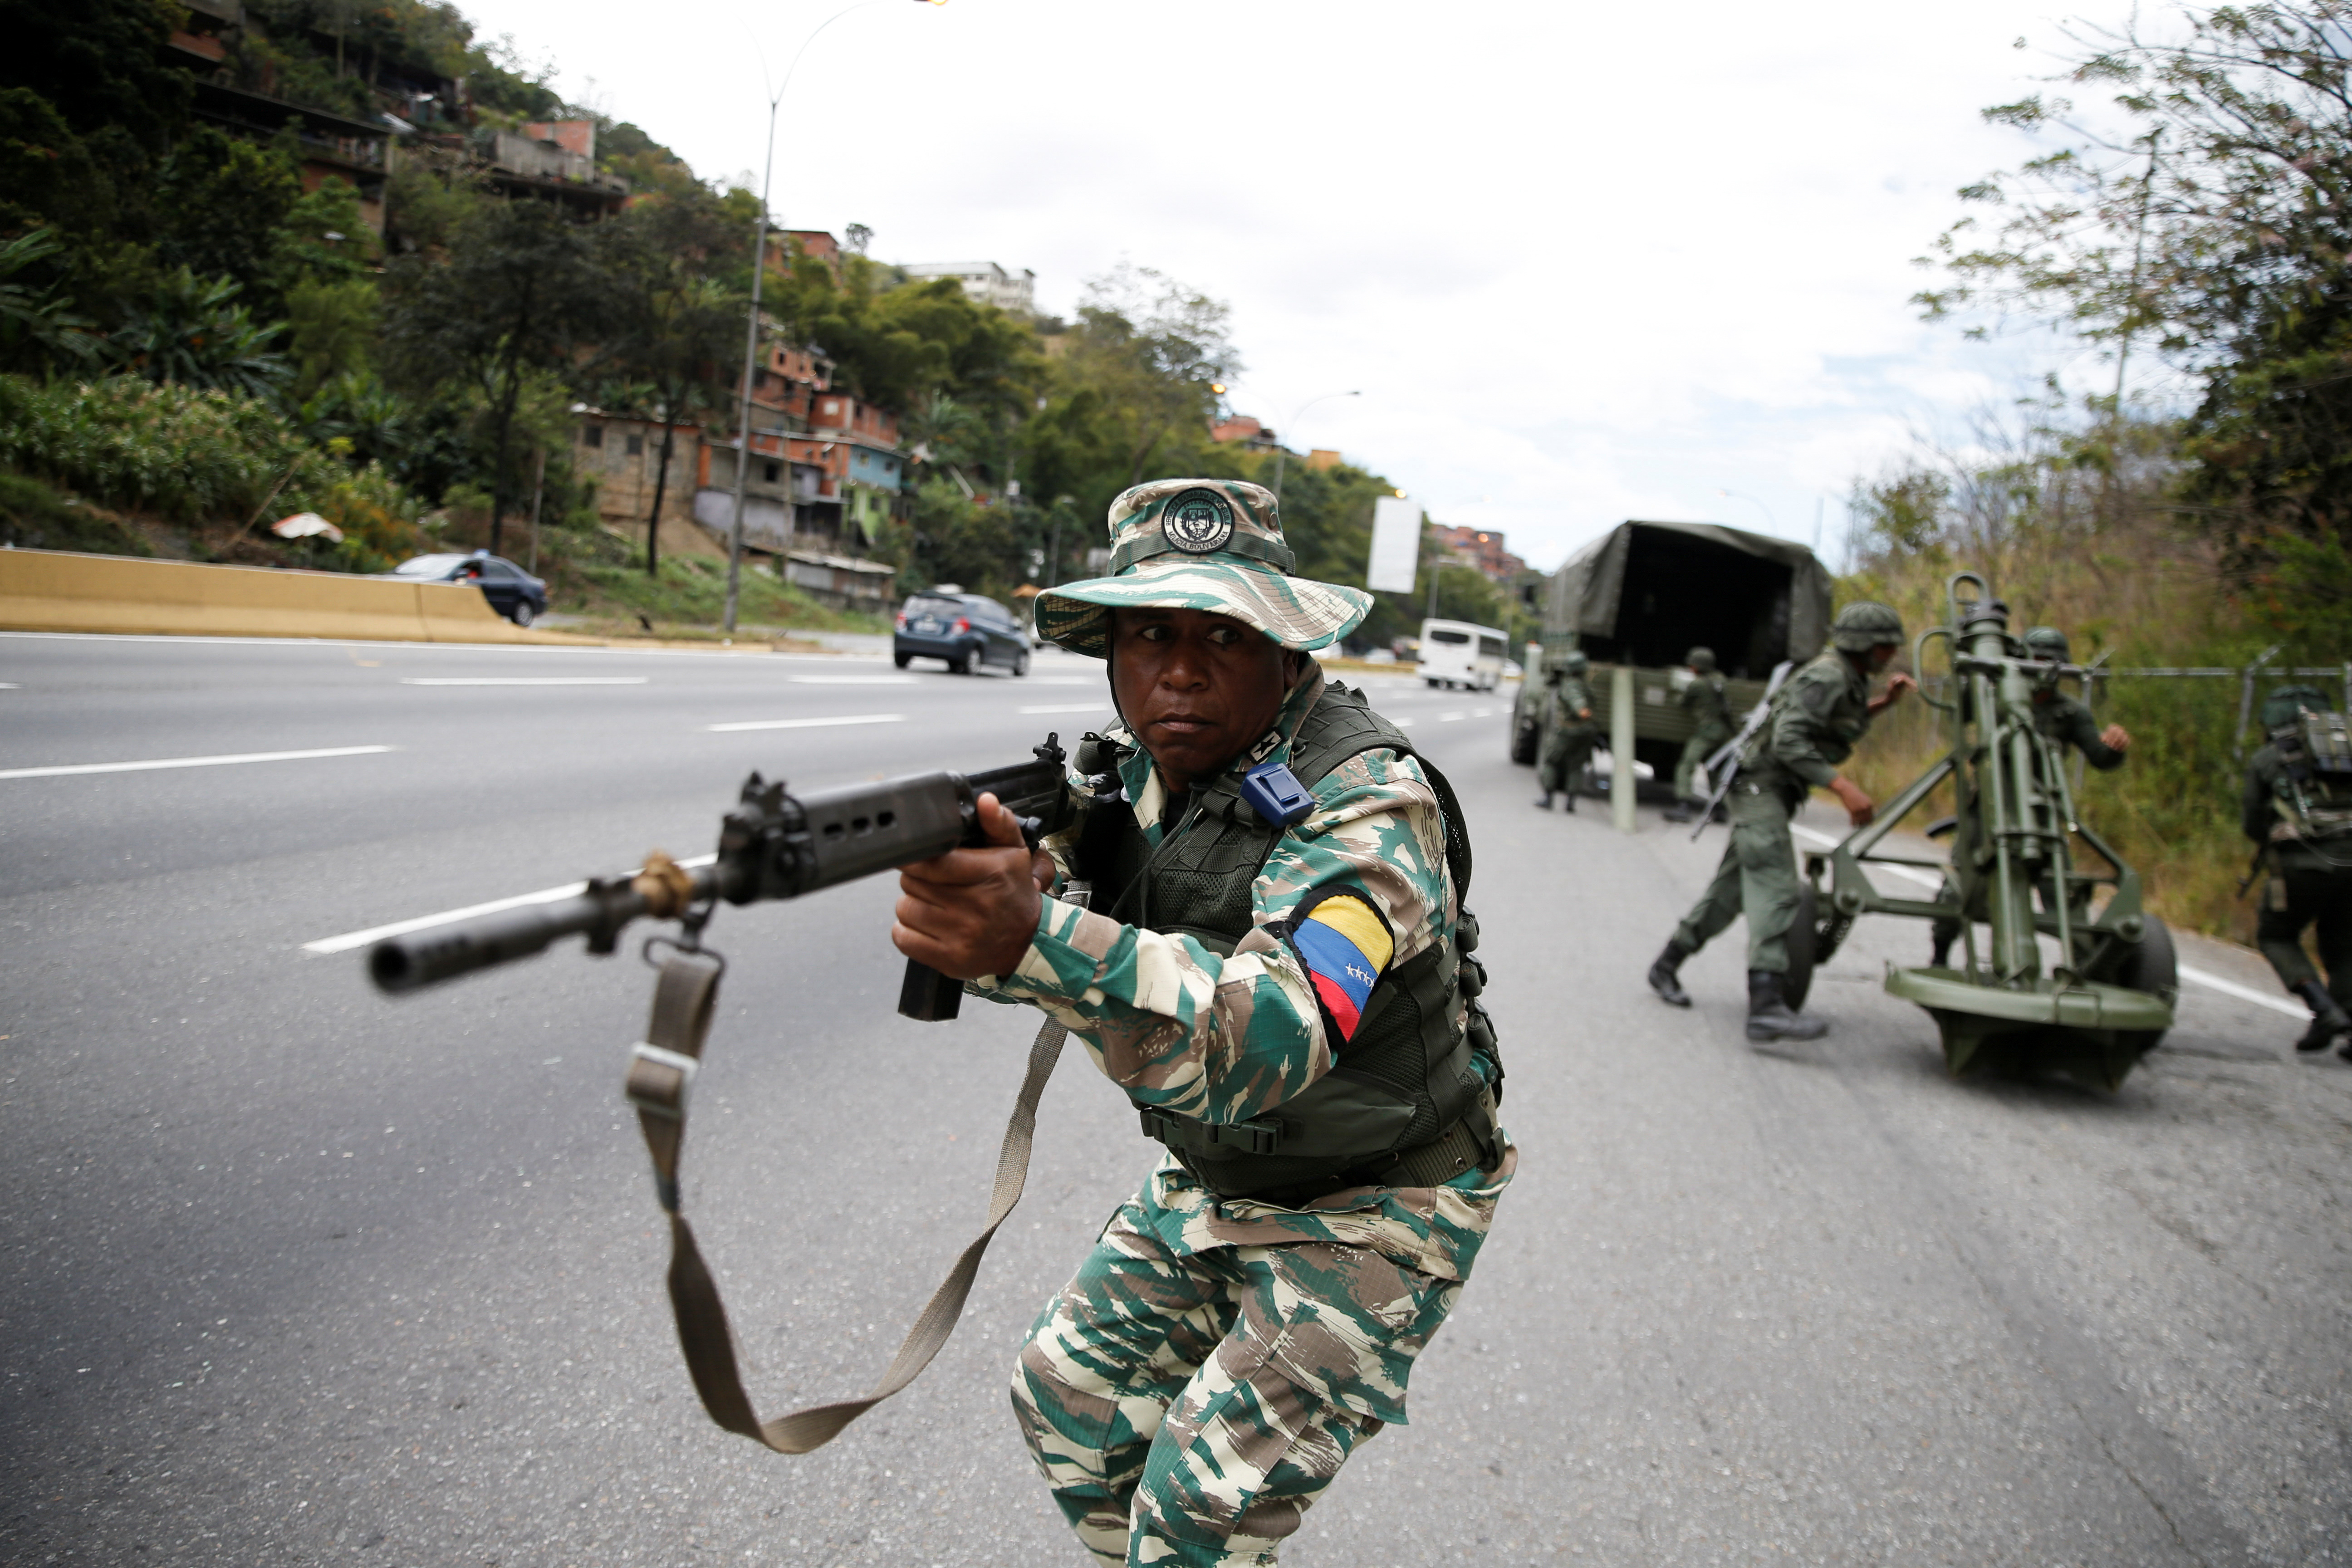 Fusiles invisibles y tanquetas accidentadas: Maduro y “la costra” que pretende meterle miedo a Trump (VIDEOS)